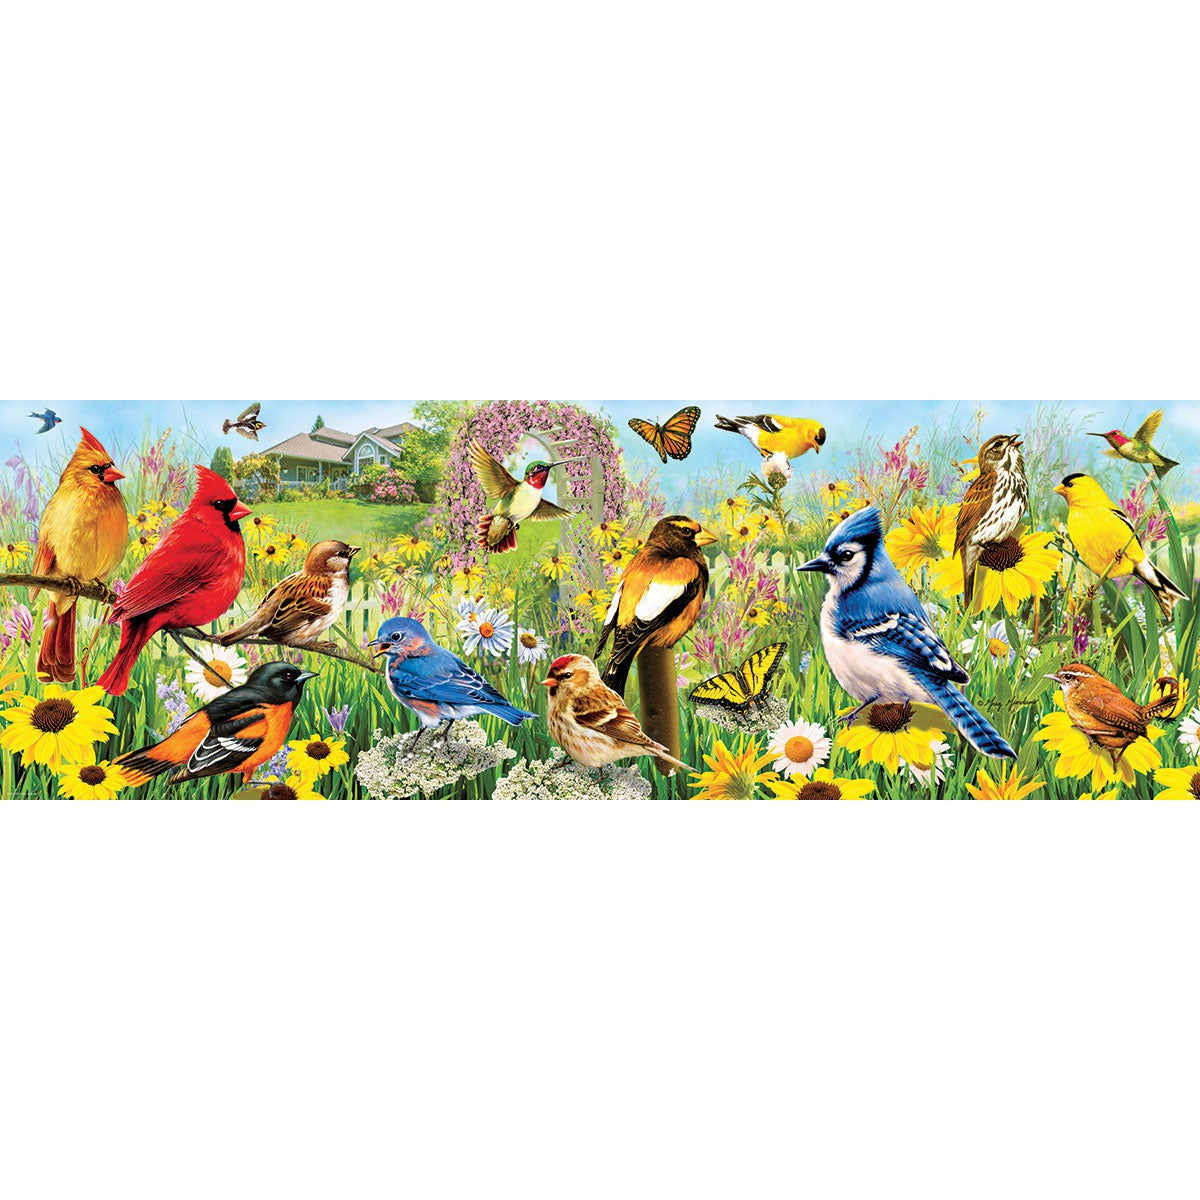 Garden Birds 1000 Piece Panoramic Jigsaw Puzzle Eurographics